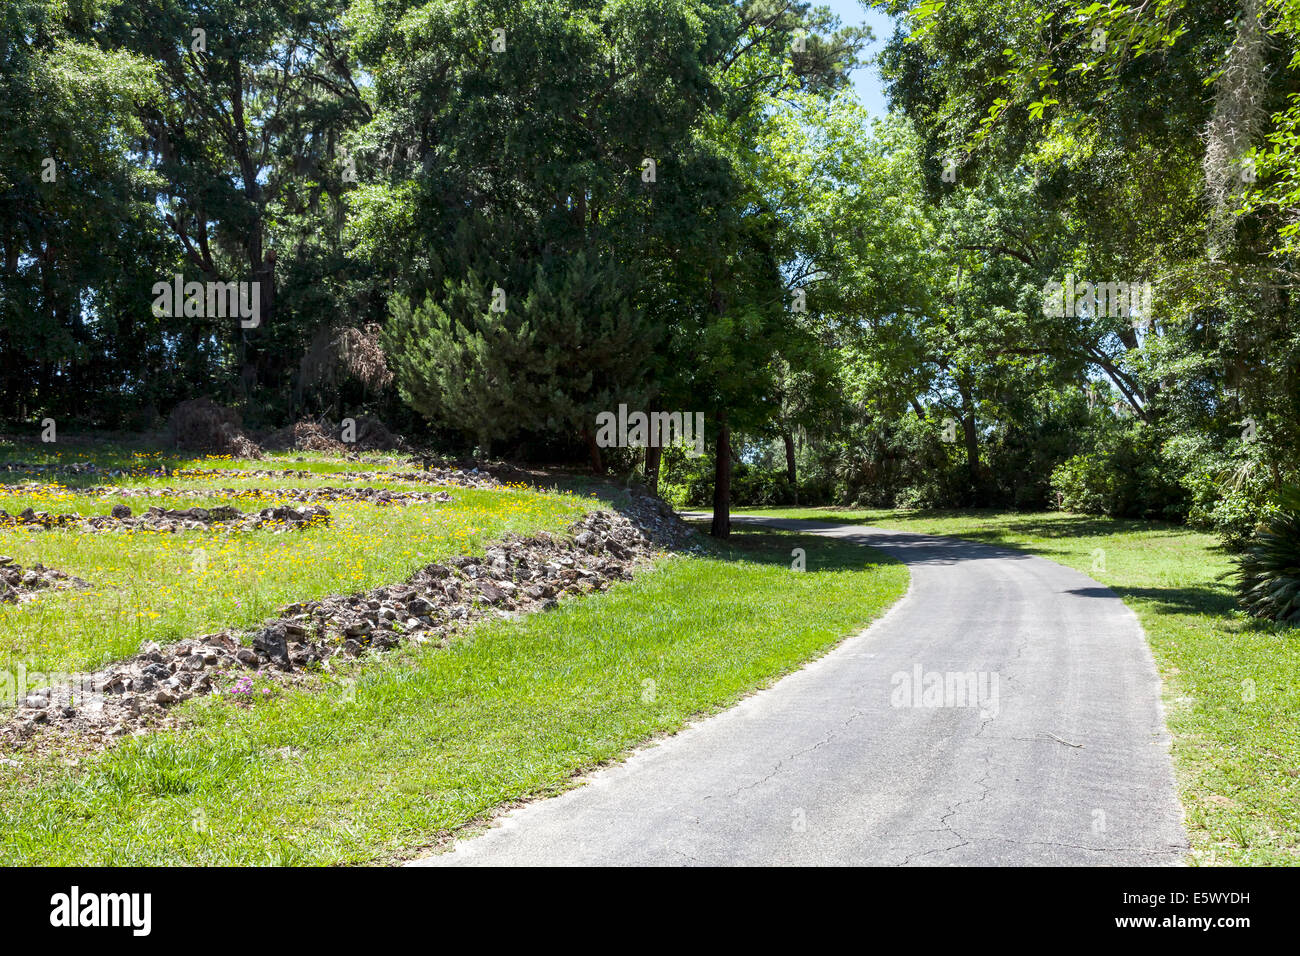 Carreggiata passa dal rock-tiered hillside formando un anfiteatro naturale nel burrone giardini del Parco Statale di Palatka, Florida, Stati Uniti d'America. Foto Stock